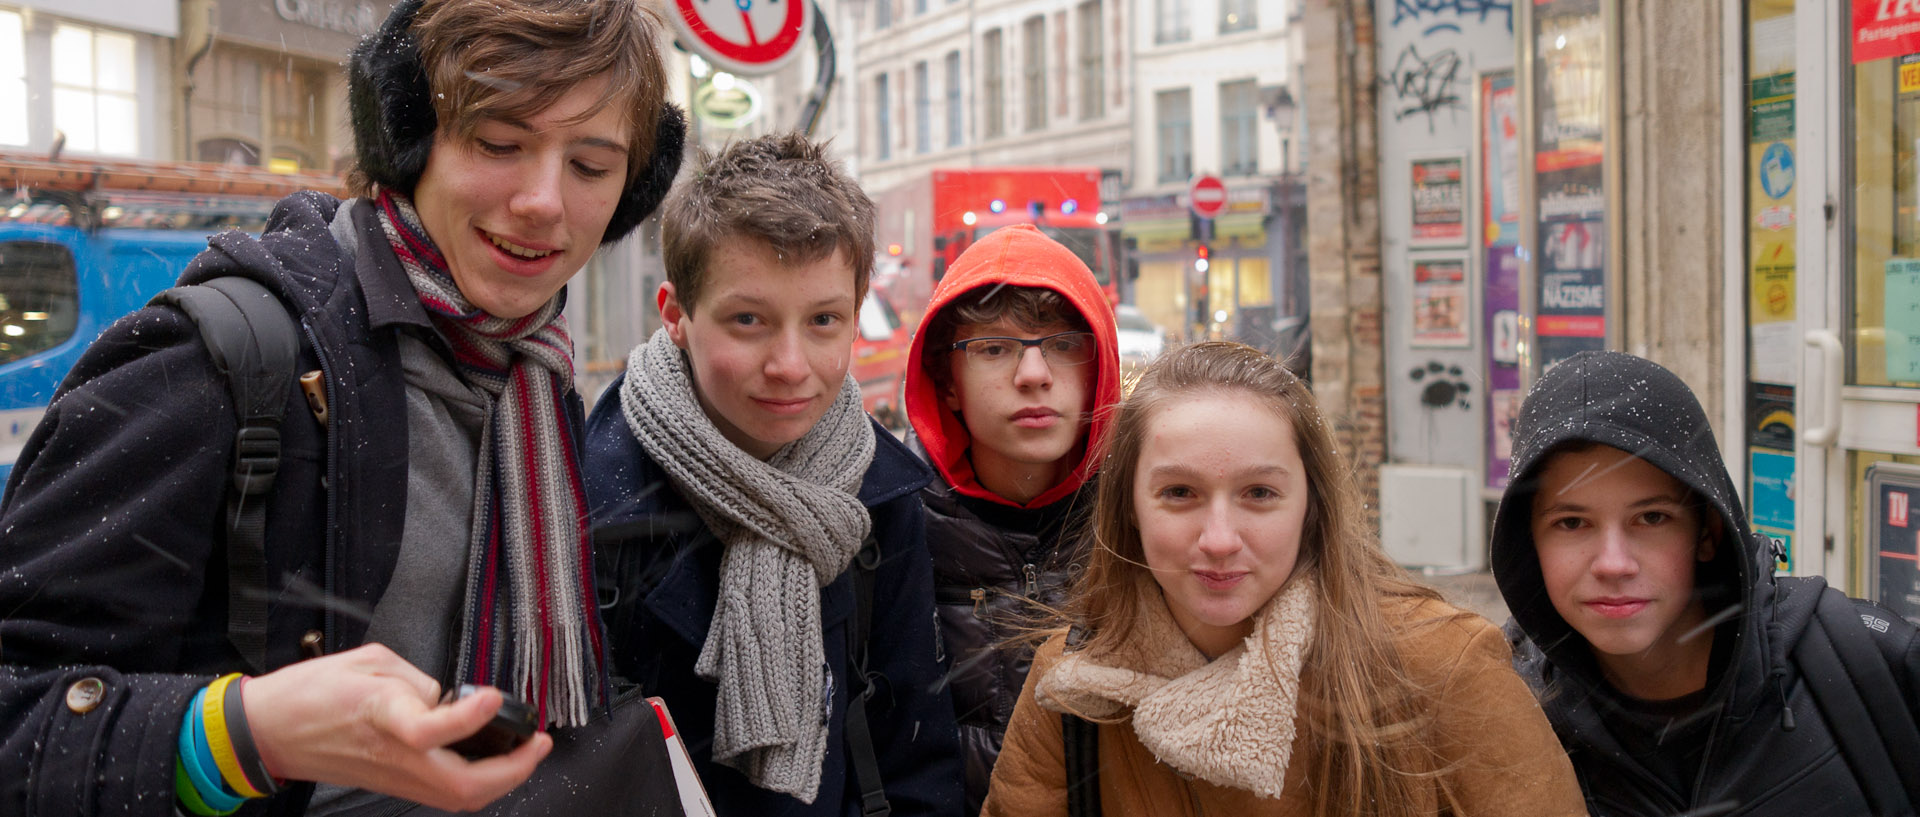 Groupe de jeunes, rue Esquermoise, à Lille.